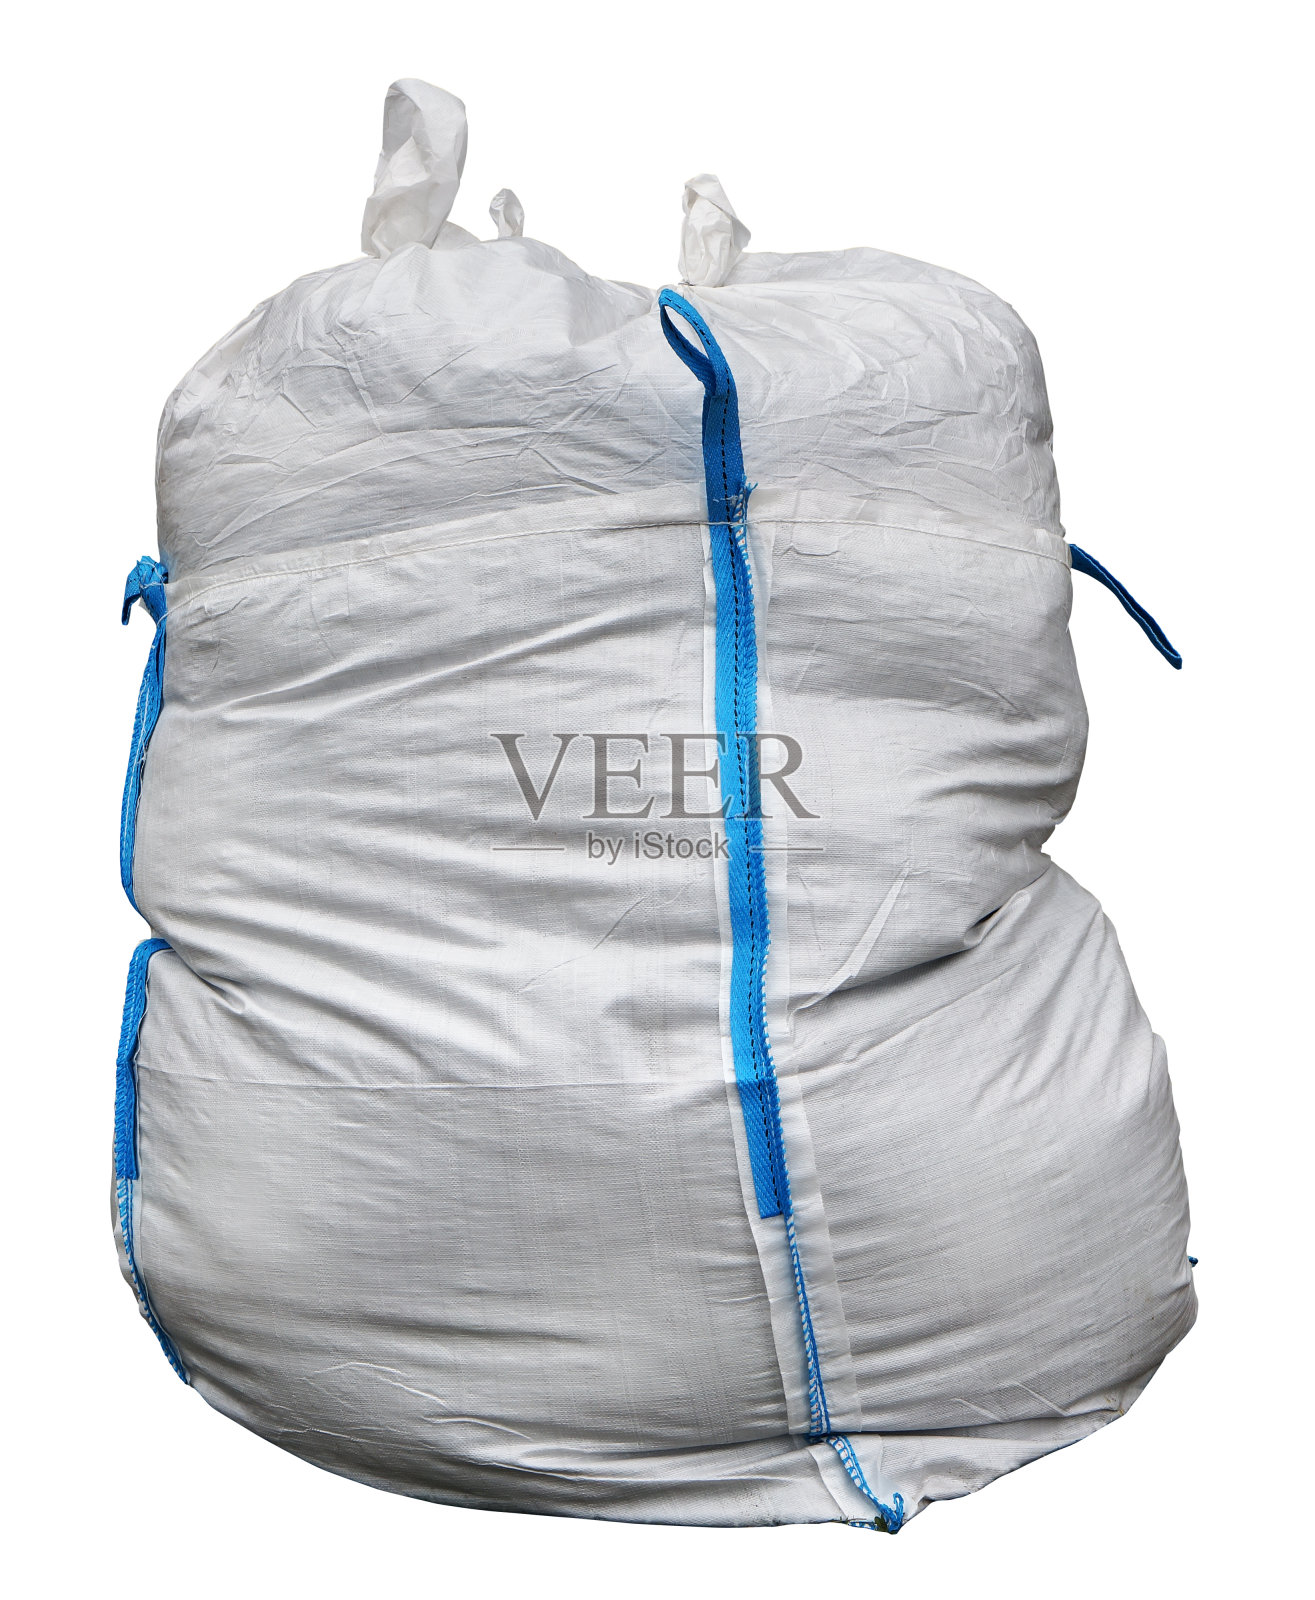 装建筑废料的大袋子是用白色合成麻袋制成的，上面有用于运输的蓝色环。孤立的补丁照片摄影图片